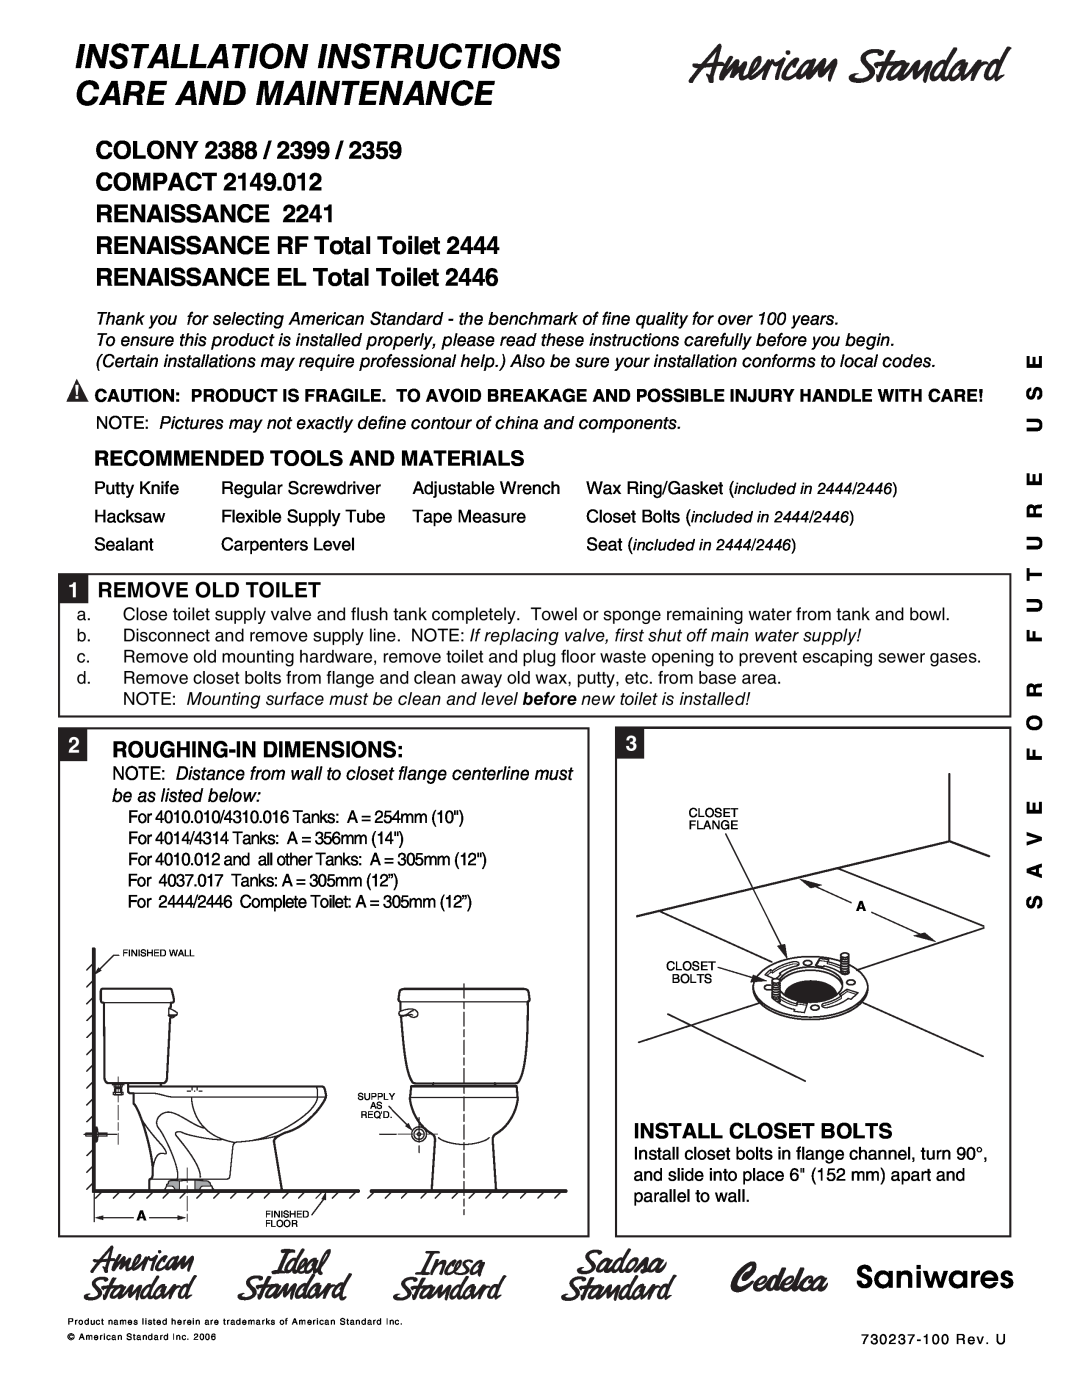 American Standard 2444 dimensions Recommended Tools And Materials, 1REMOVE OLD TOILET, O R F U T U R E U S E, S A V E F 